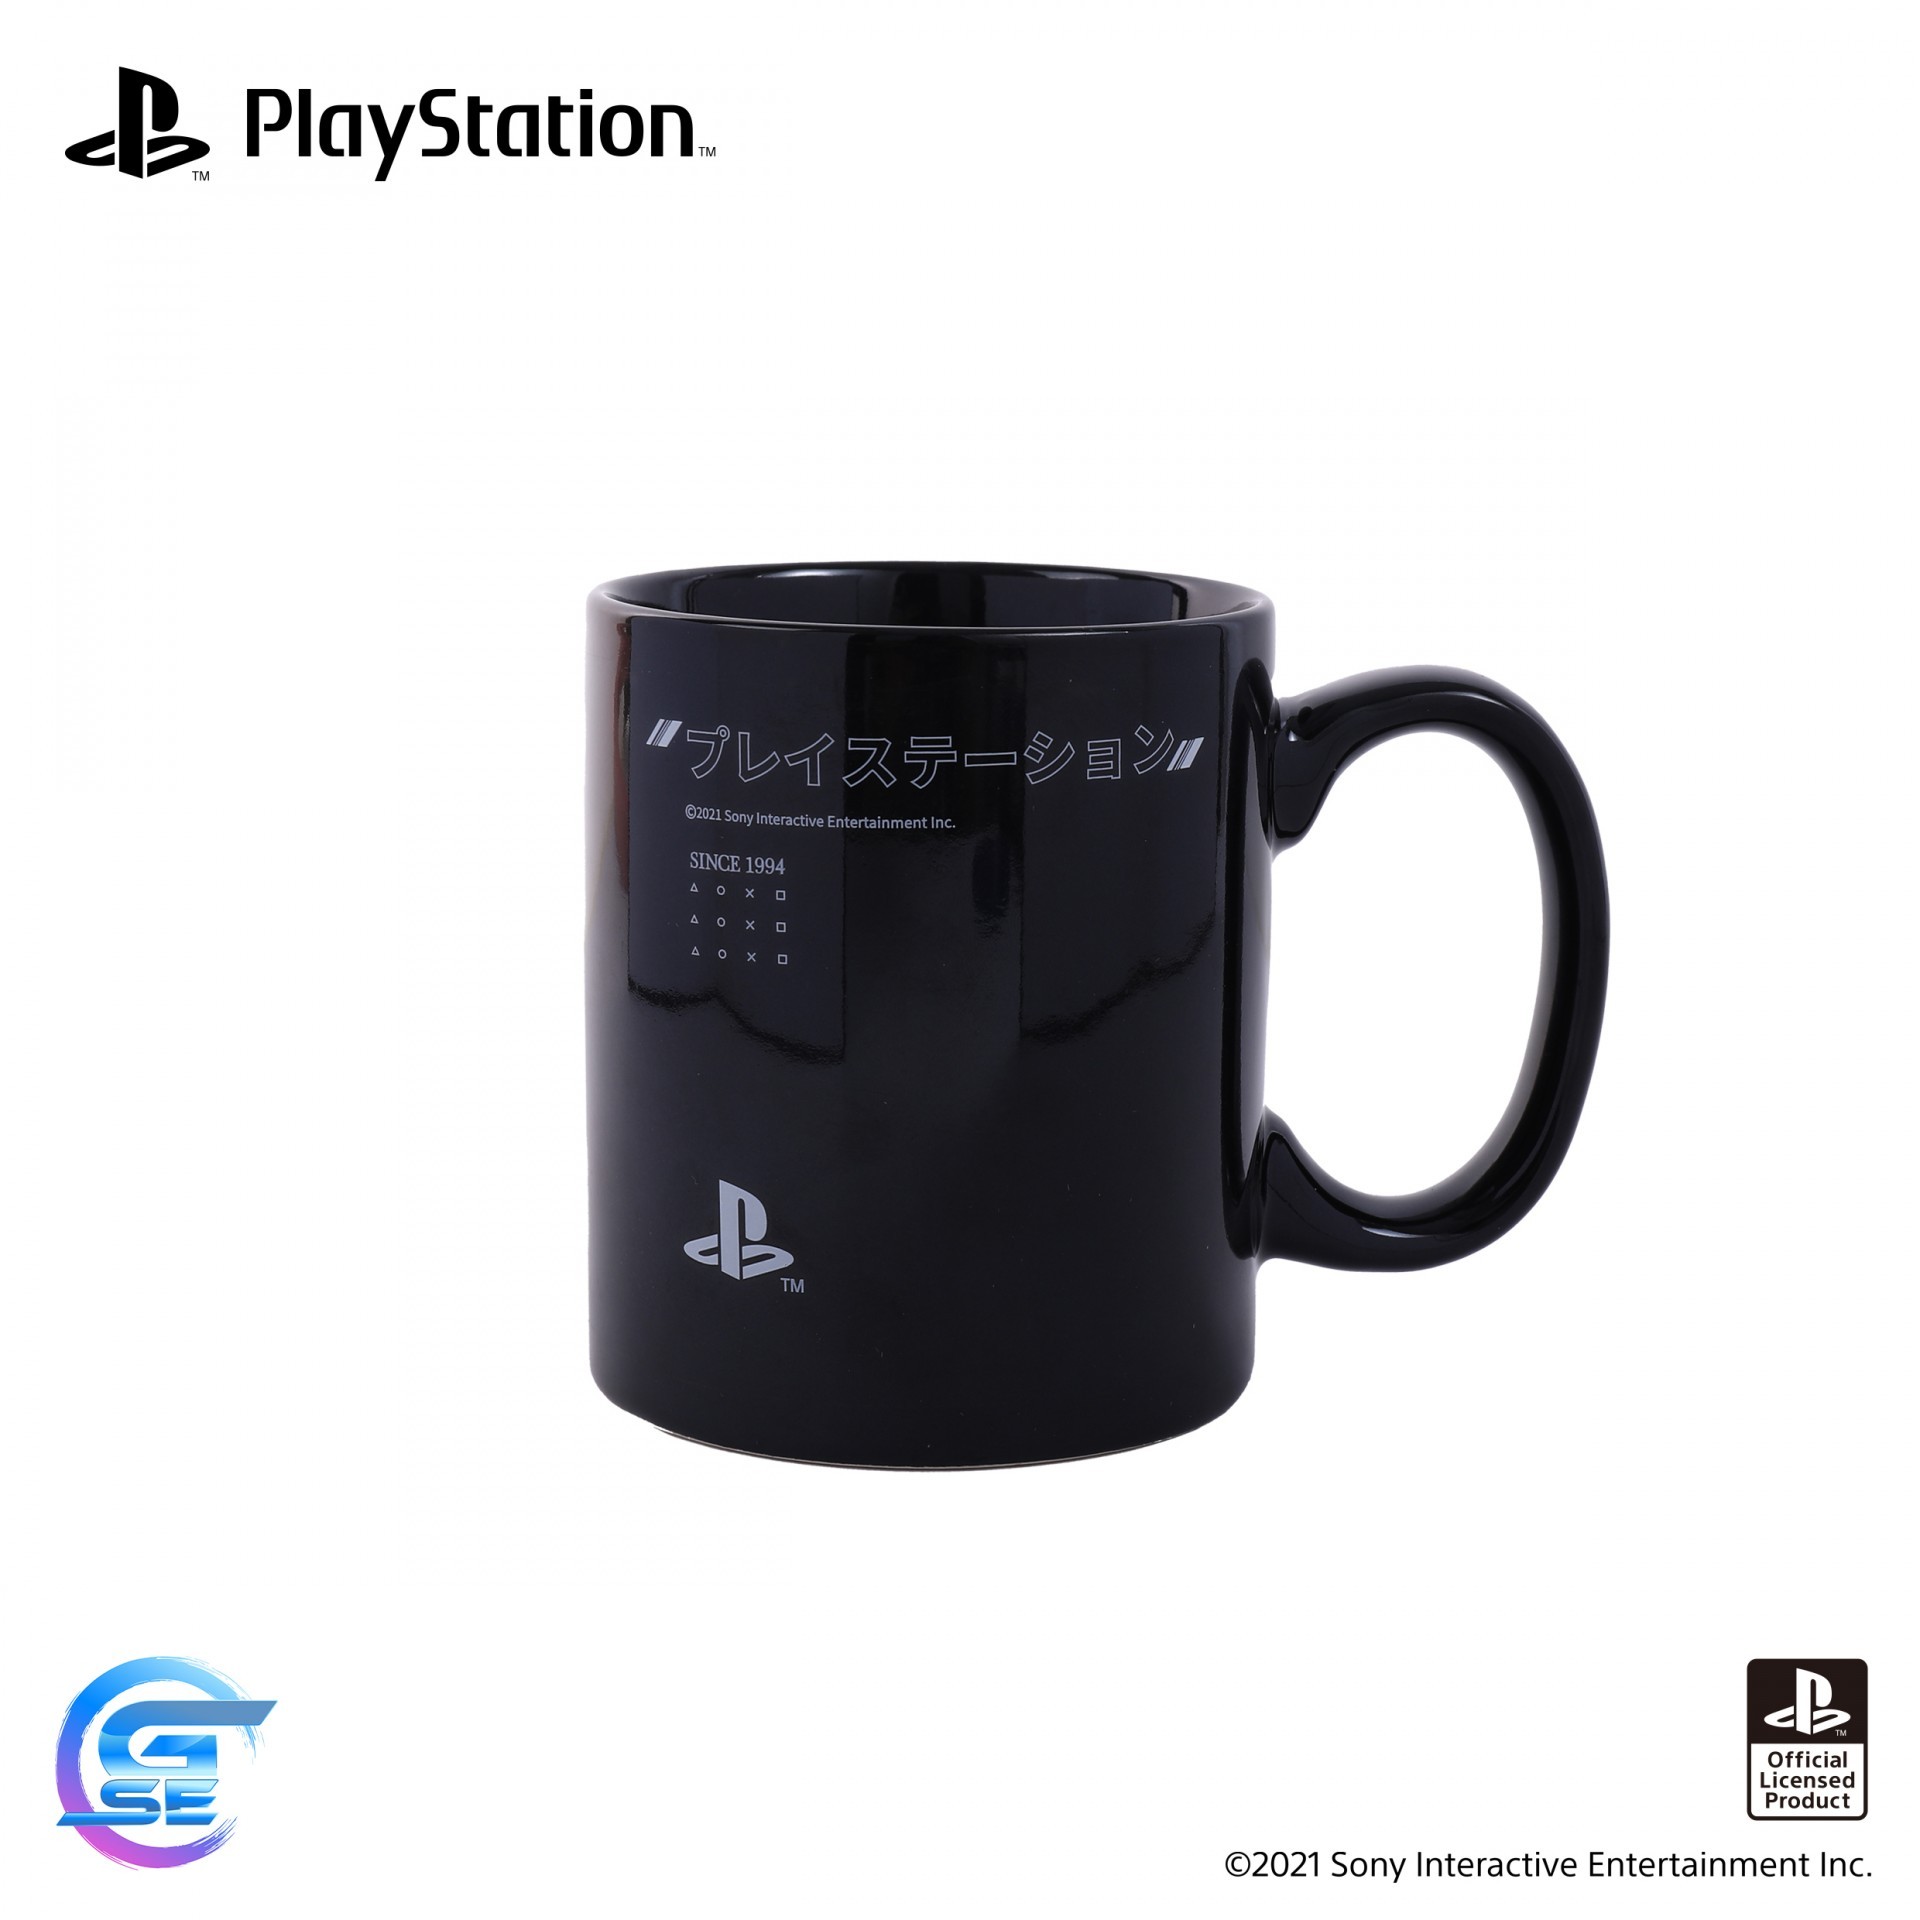 官方授权 PlayStation 主题周边产品于台湾地区将延期出货